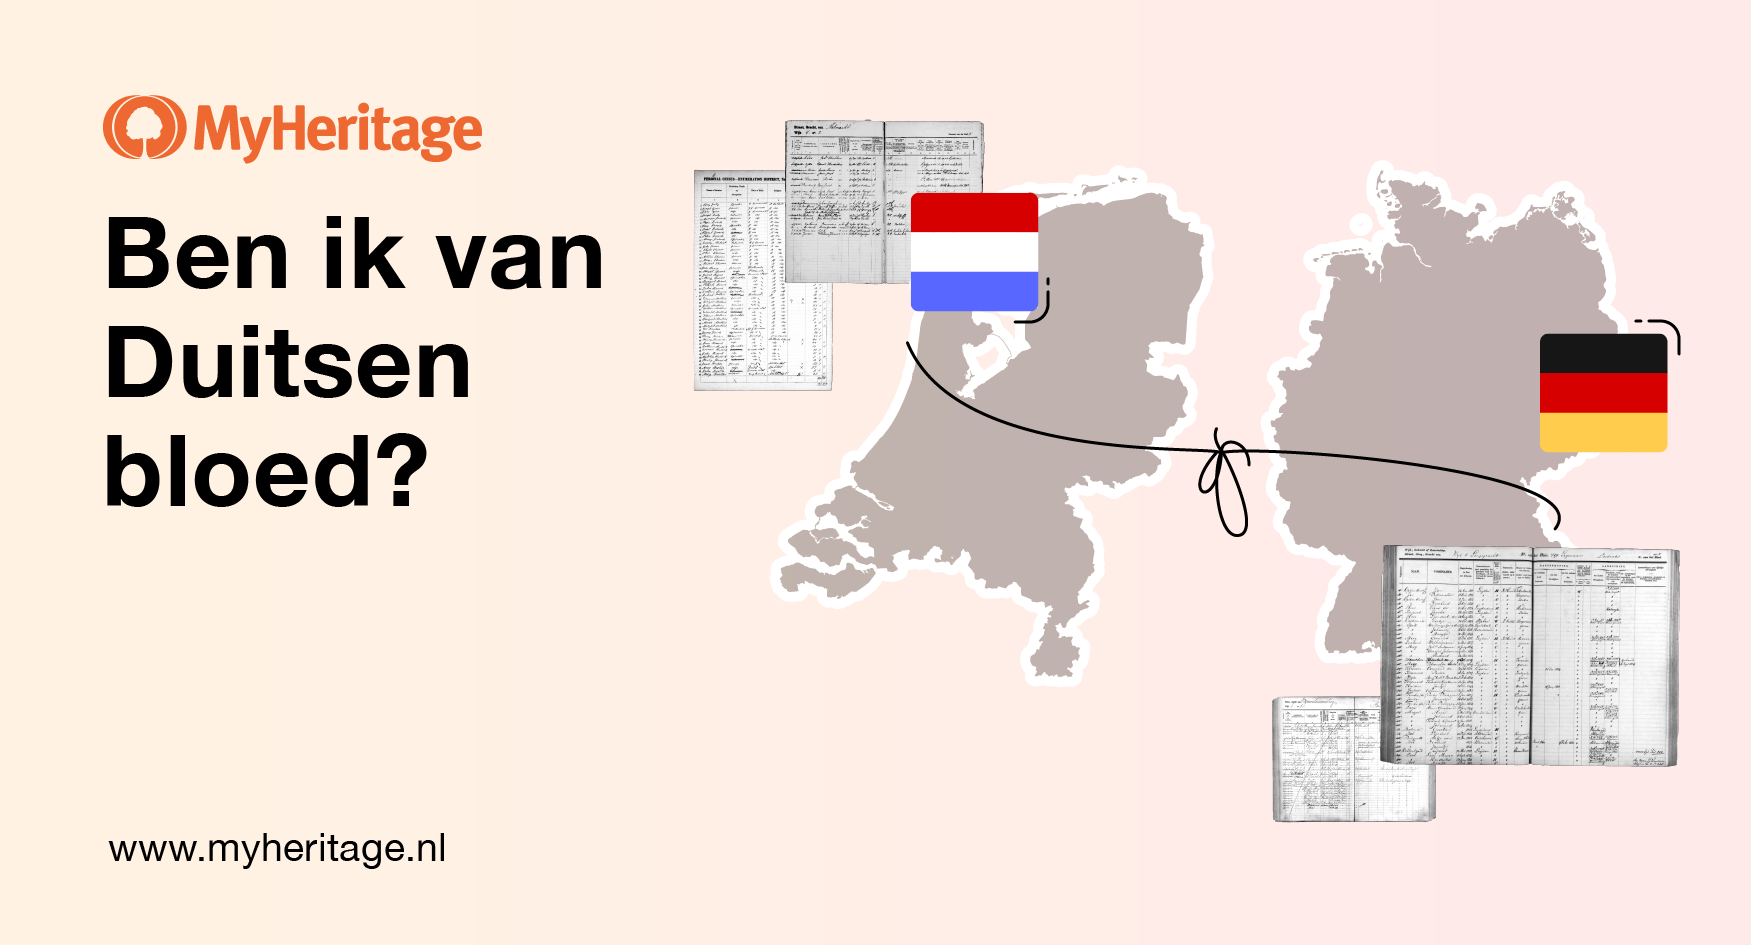 Het Nederlandse volkslied en de geschiedenis van Duitse voorouders